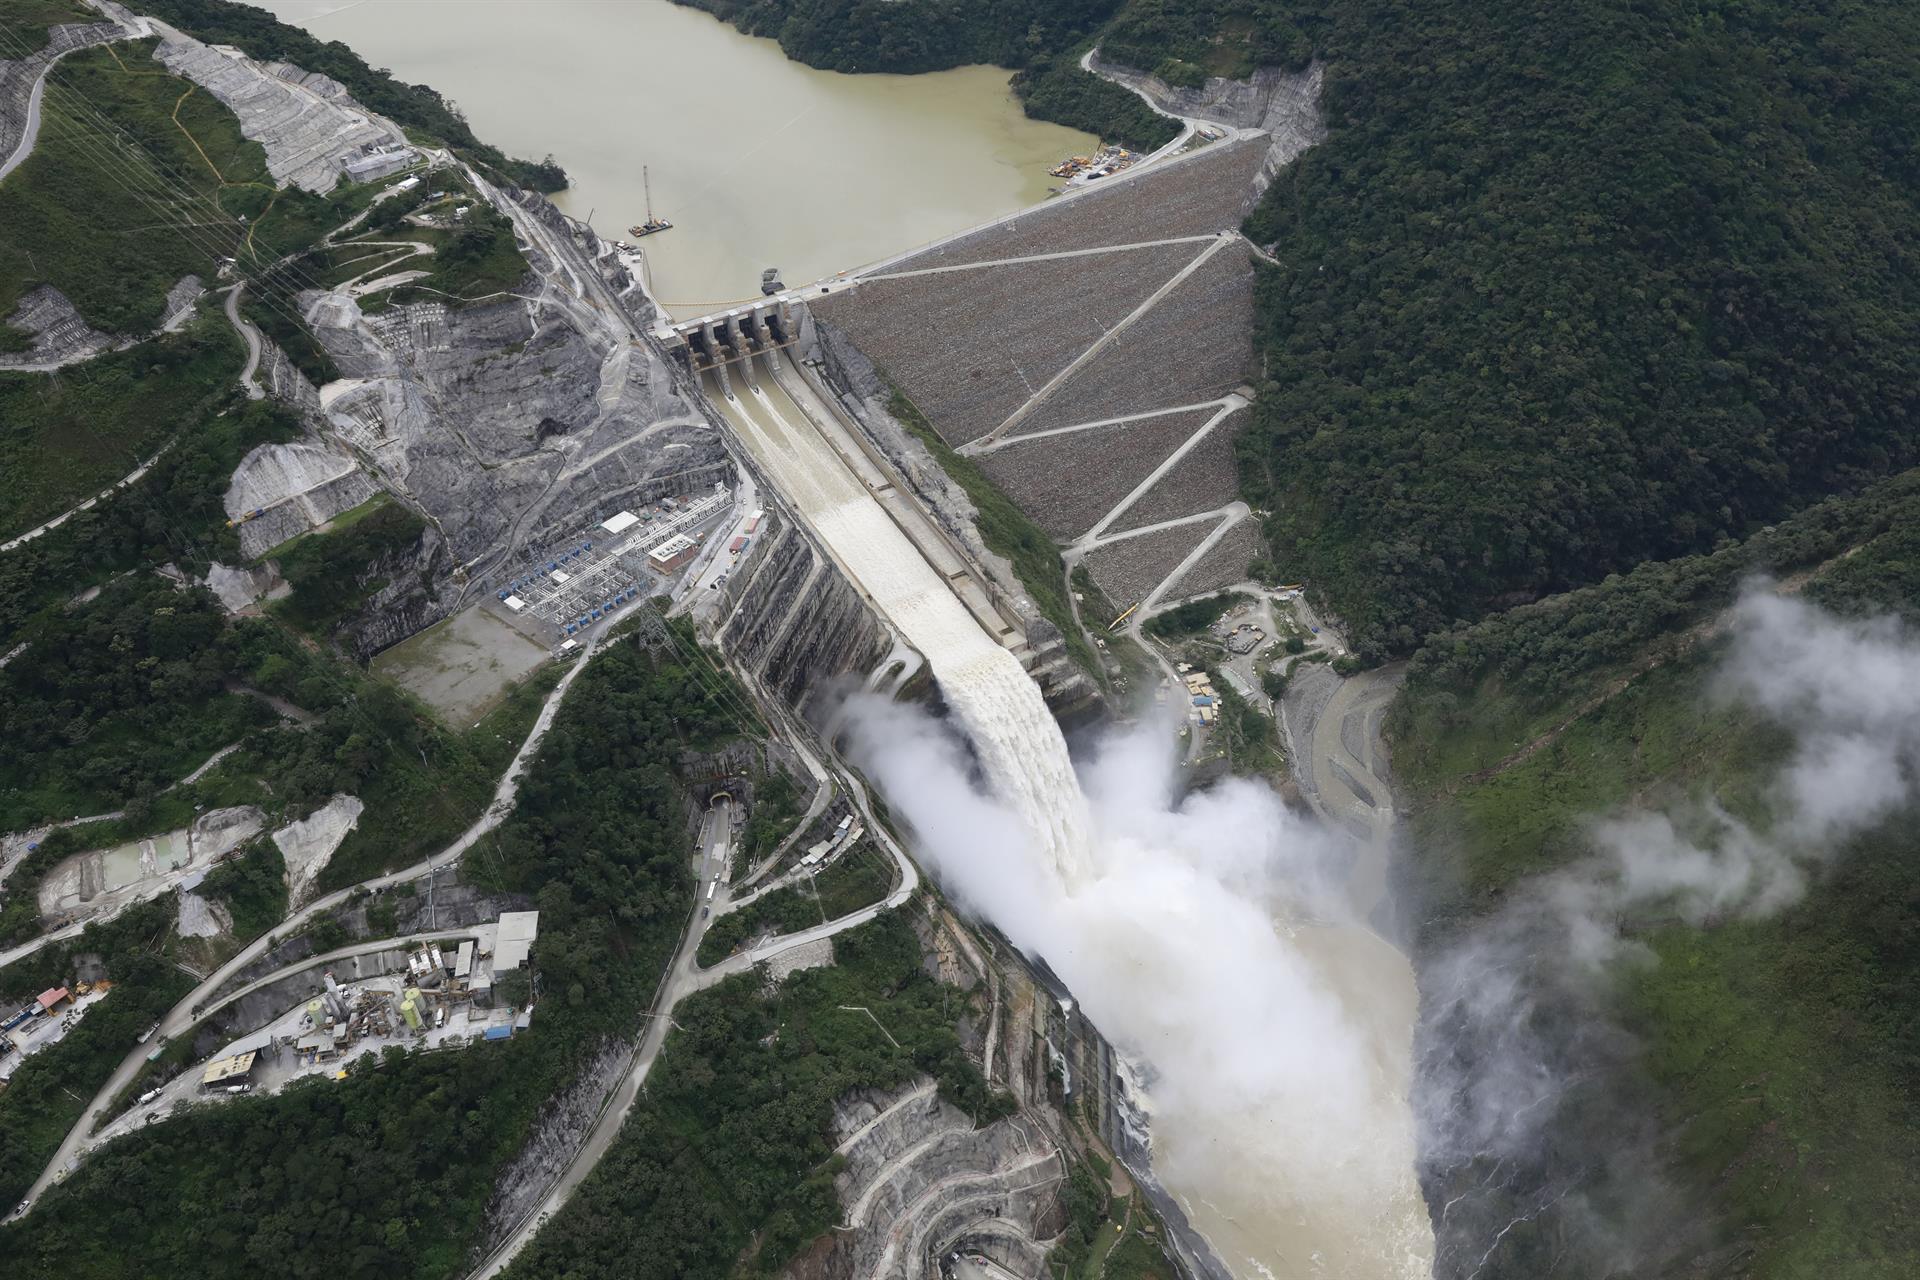 Fotografía aérea que muestra el proyecto Hidroituango, ubicado sobre el río Cauca entre Ituango y Puerto Valdivia, el 13 de octubre de 2022, en el departamento de Antioquia (Colombia). EFE/Carlos Ortega